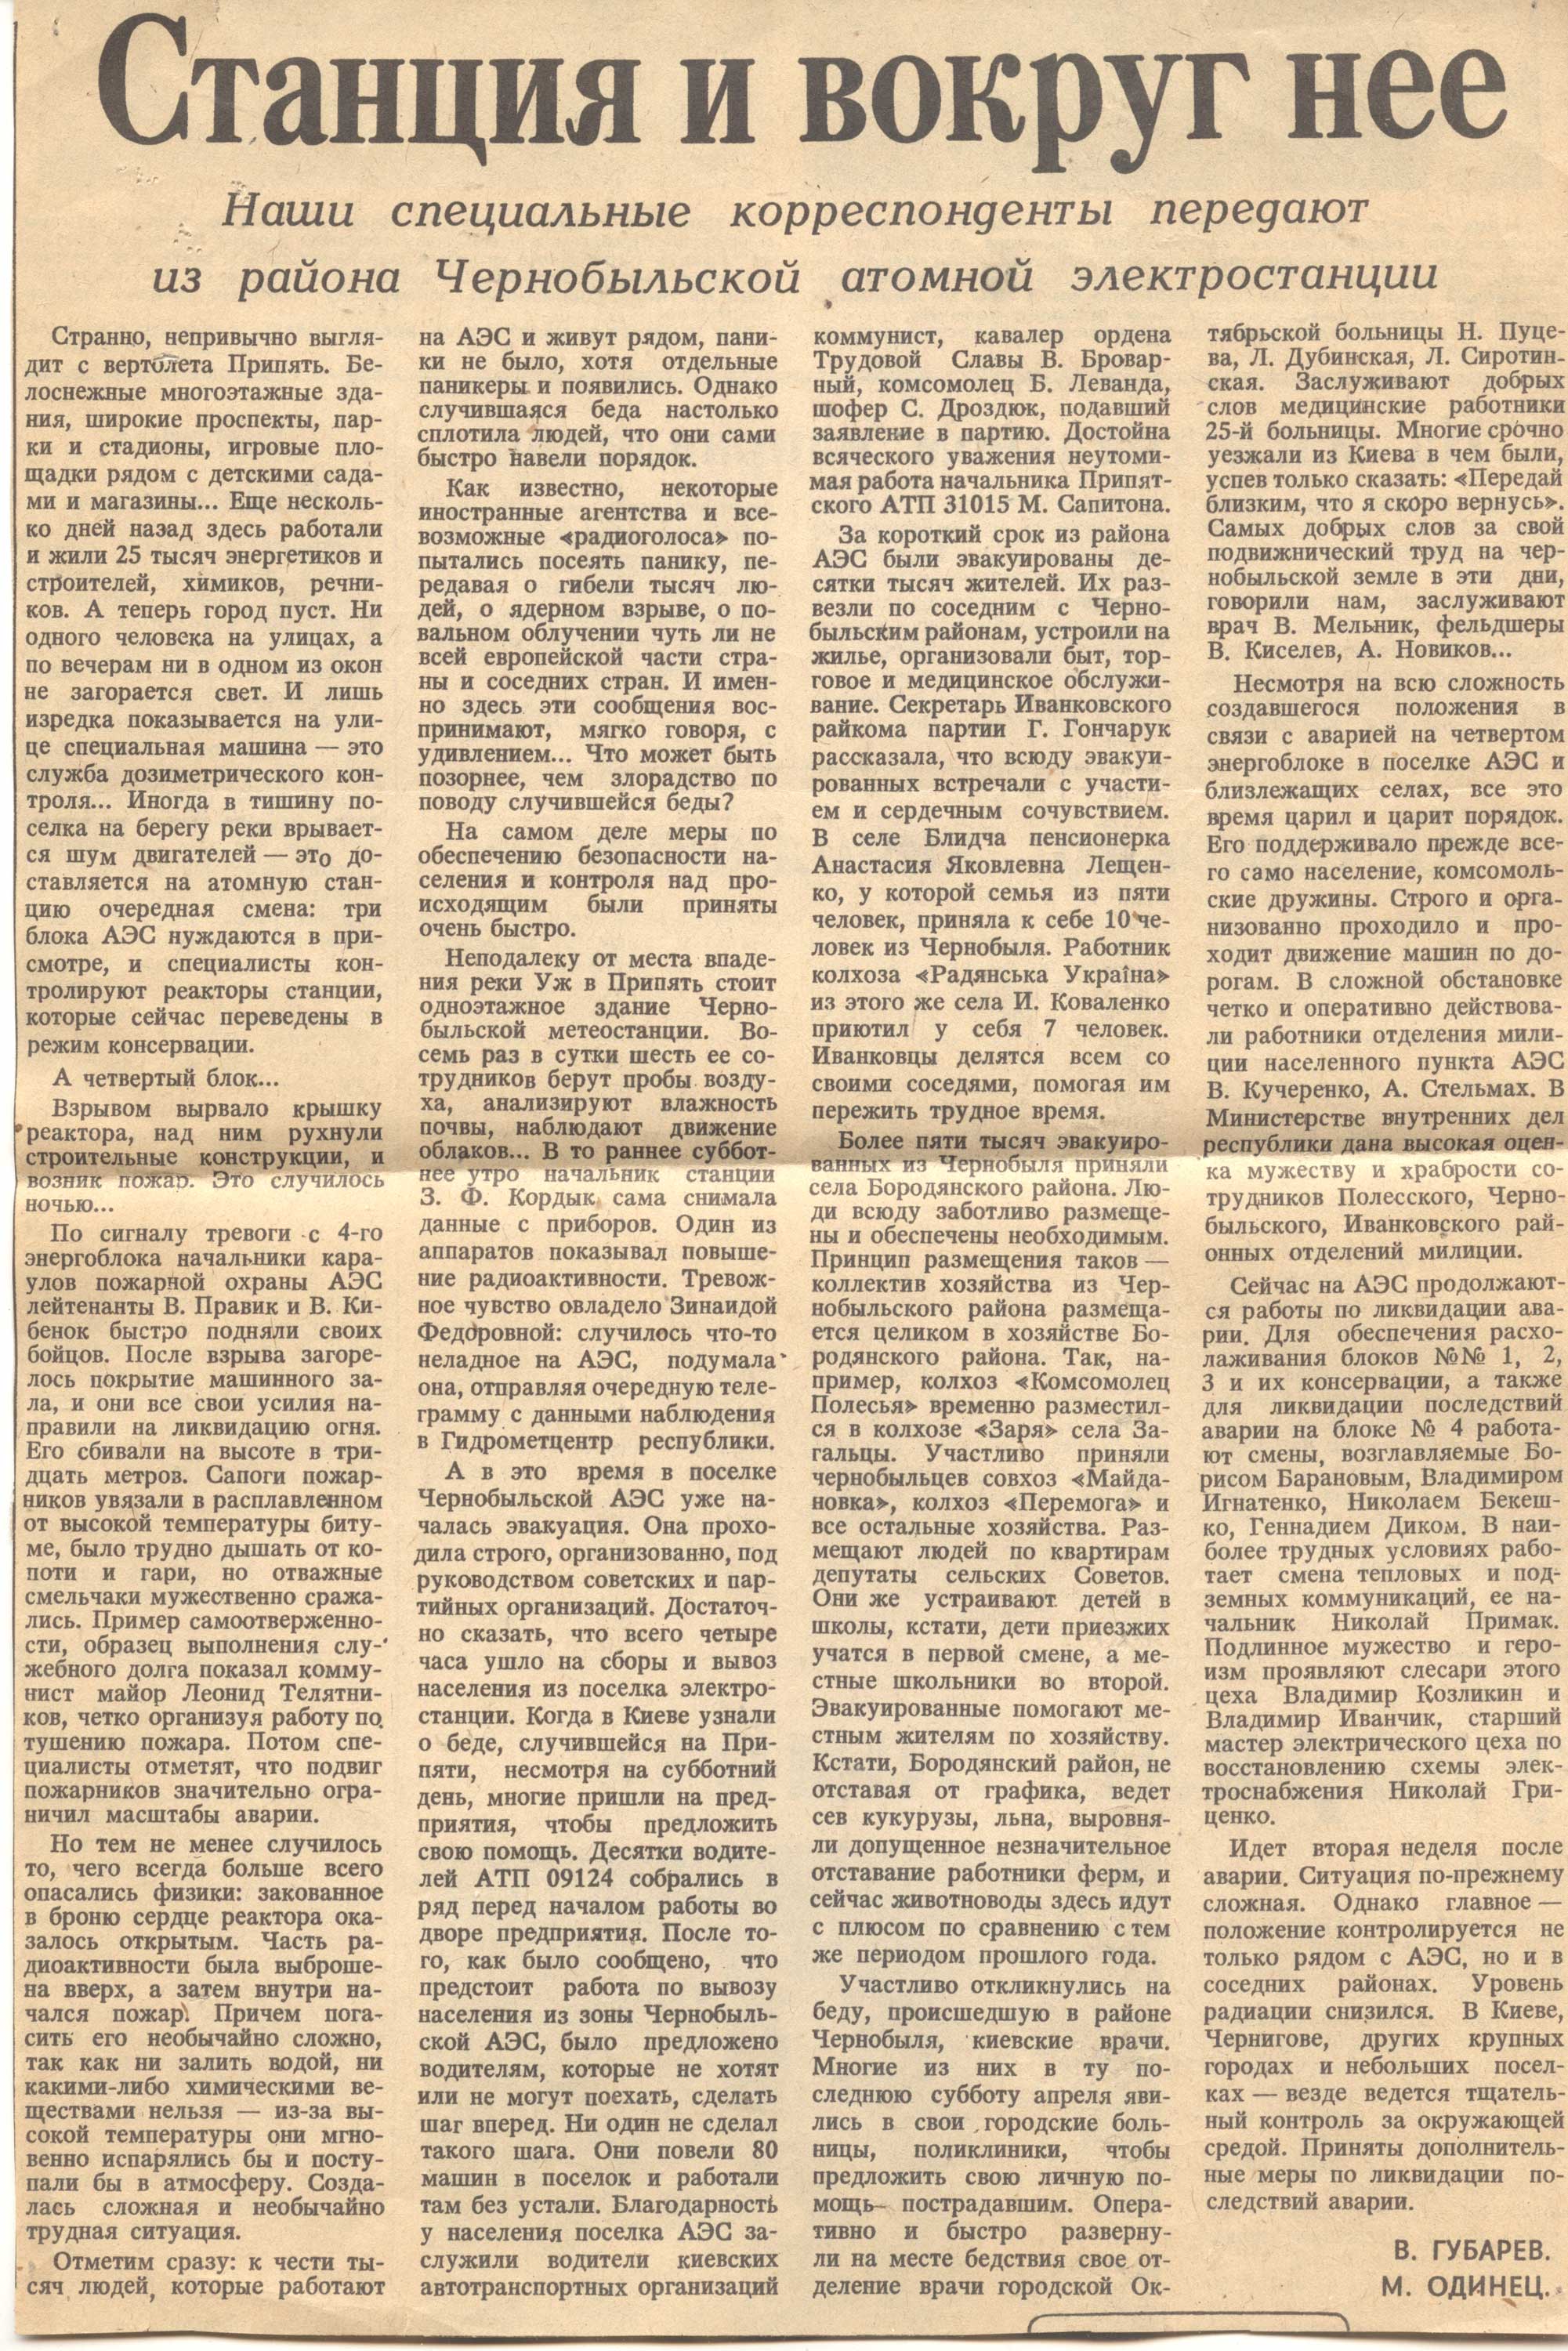 Ситуация вокруг ЧАЭС - Советская пресса об аварии, 5 мая 1986 год